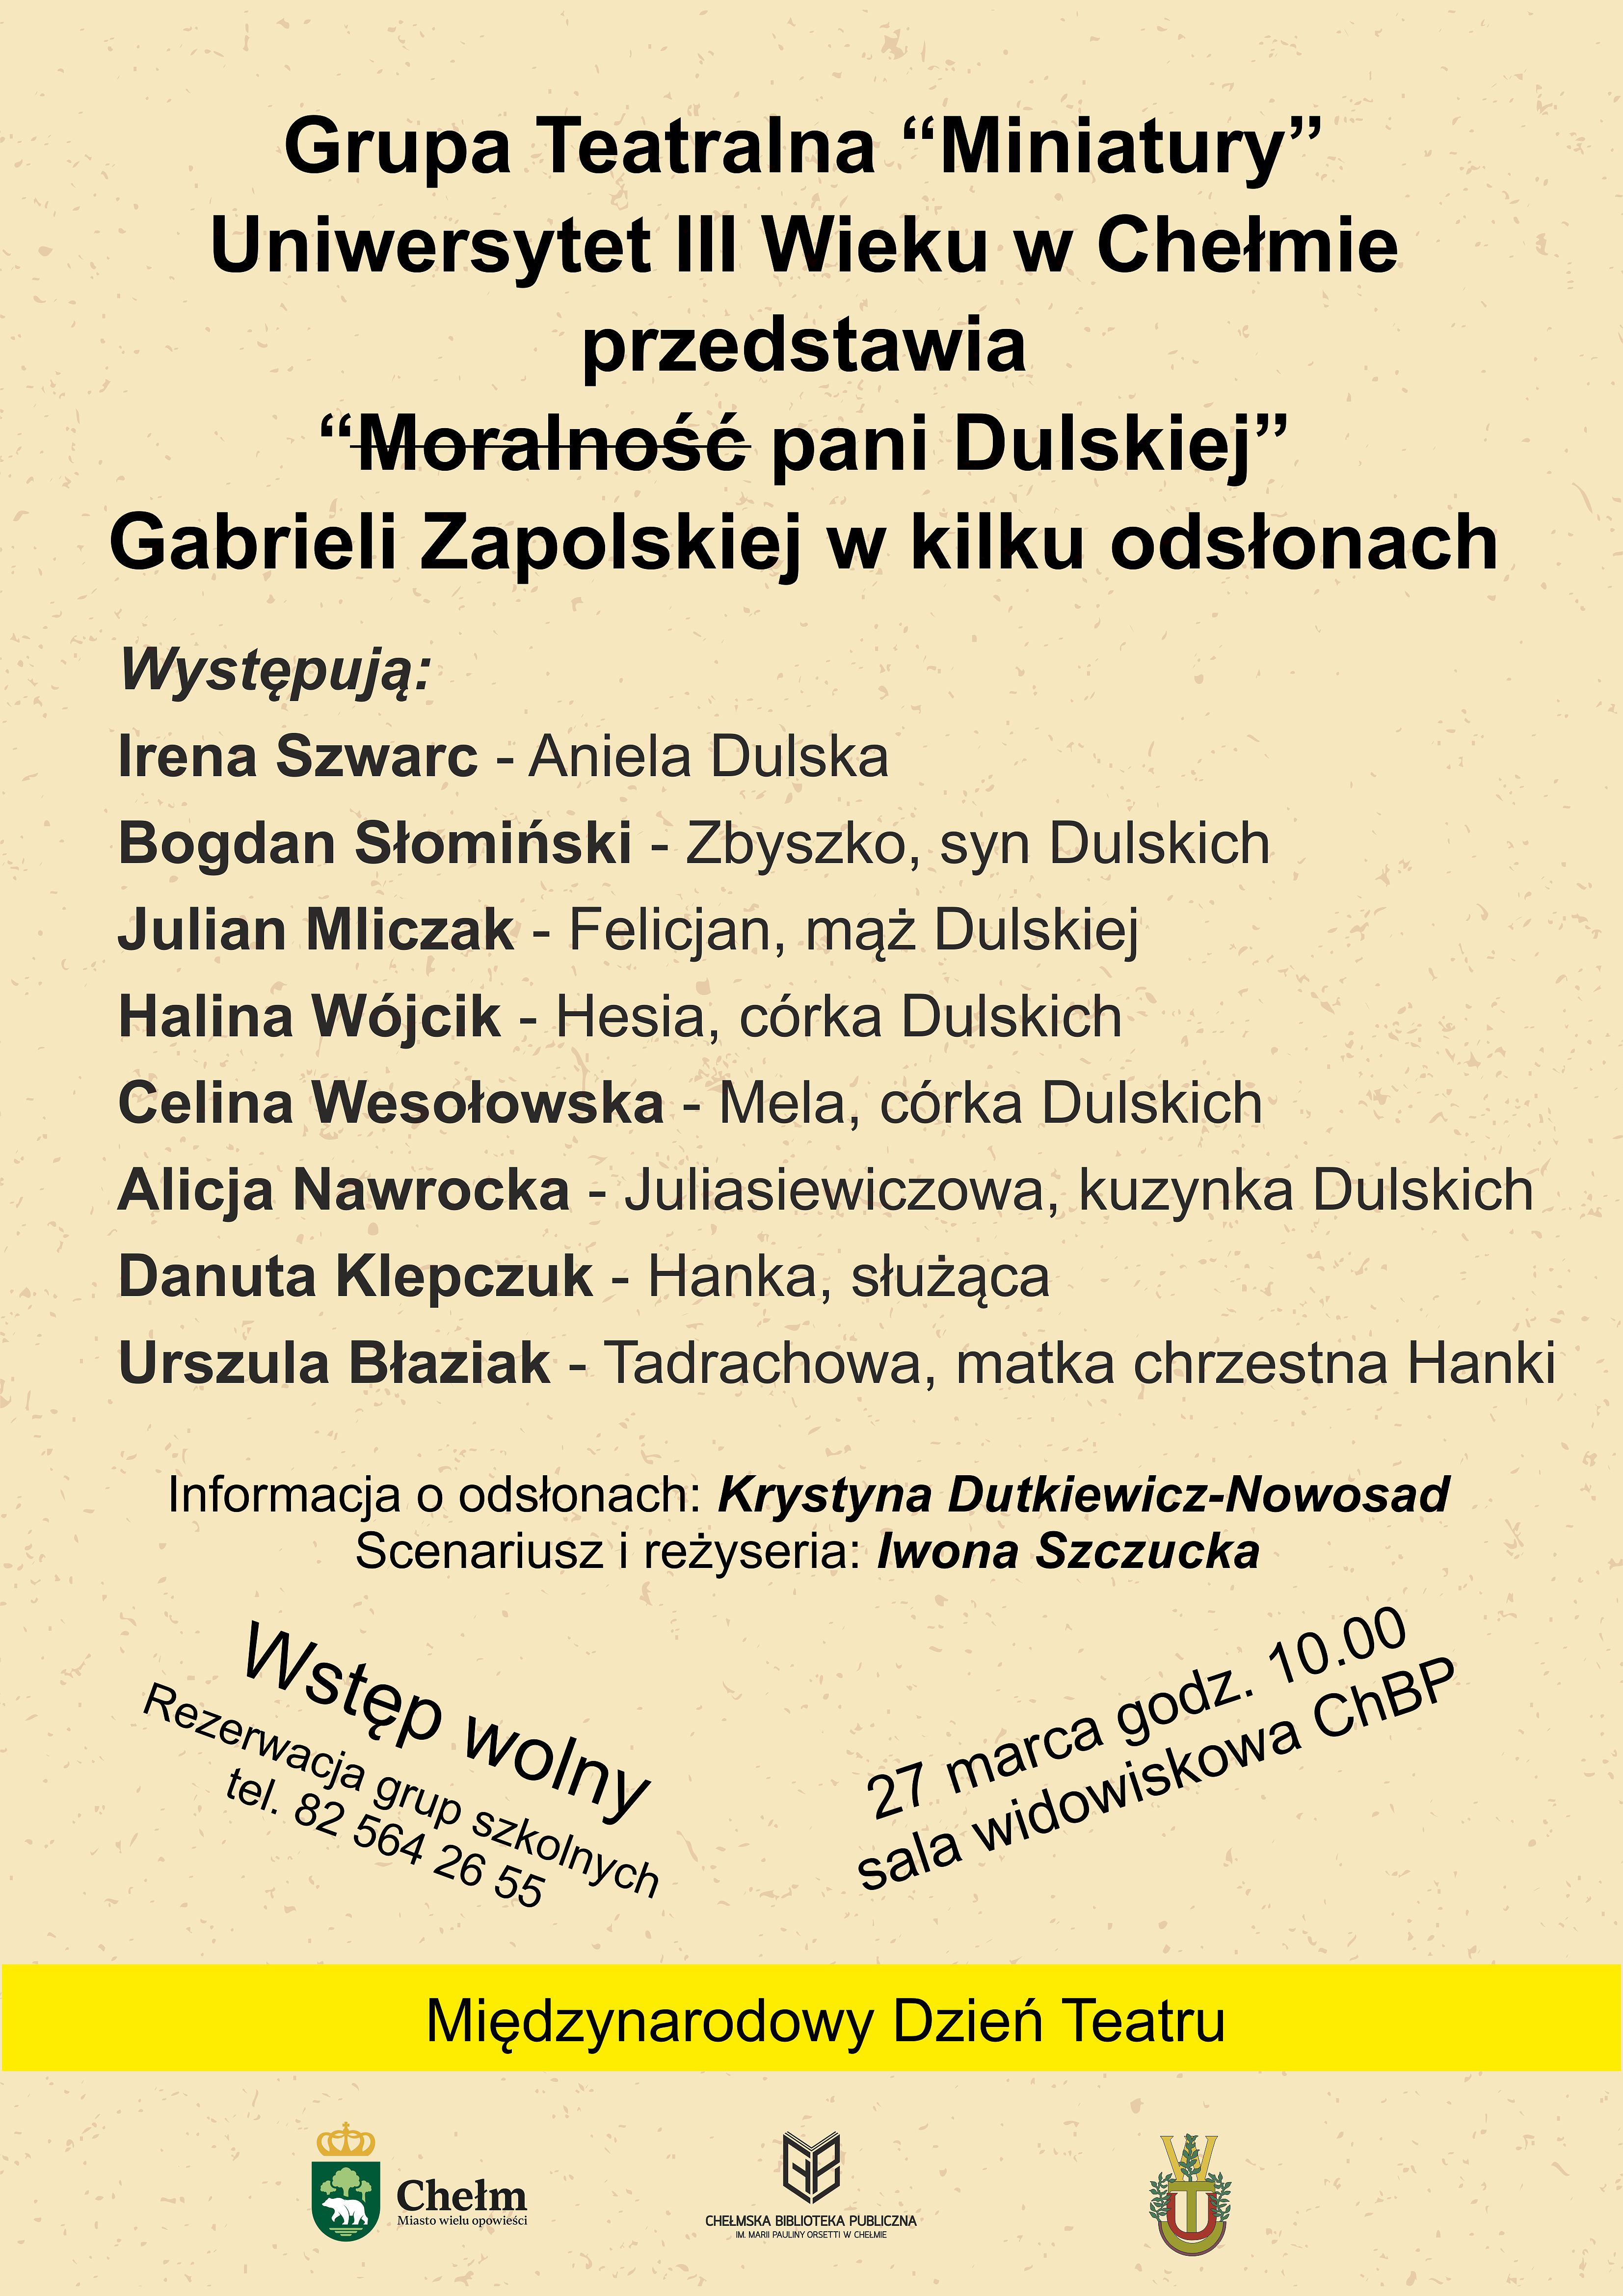 Plakat promujący przedstawienie "Moralność pani Dulskiej Gabrieli Zapolskiej w wykonaniu Grupy Teatralnej Miniatury